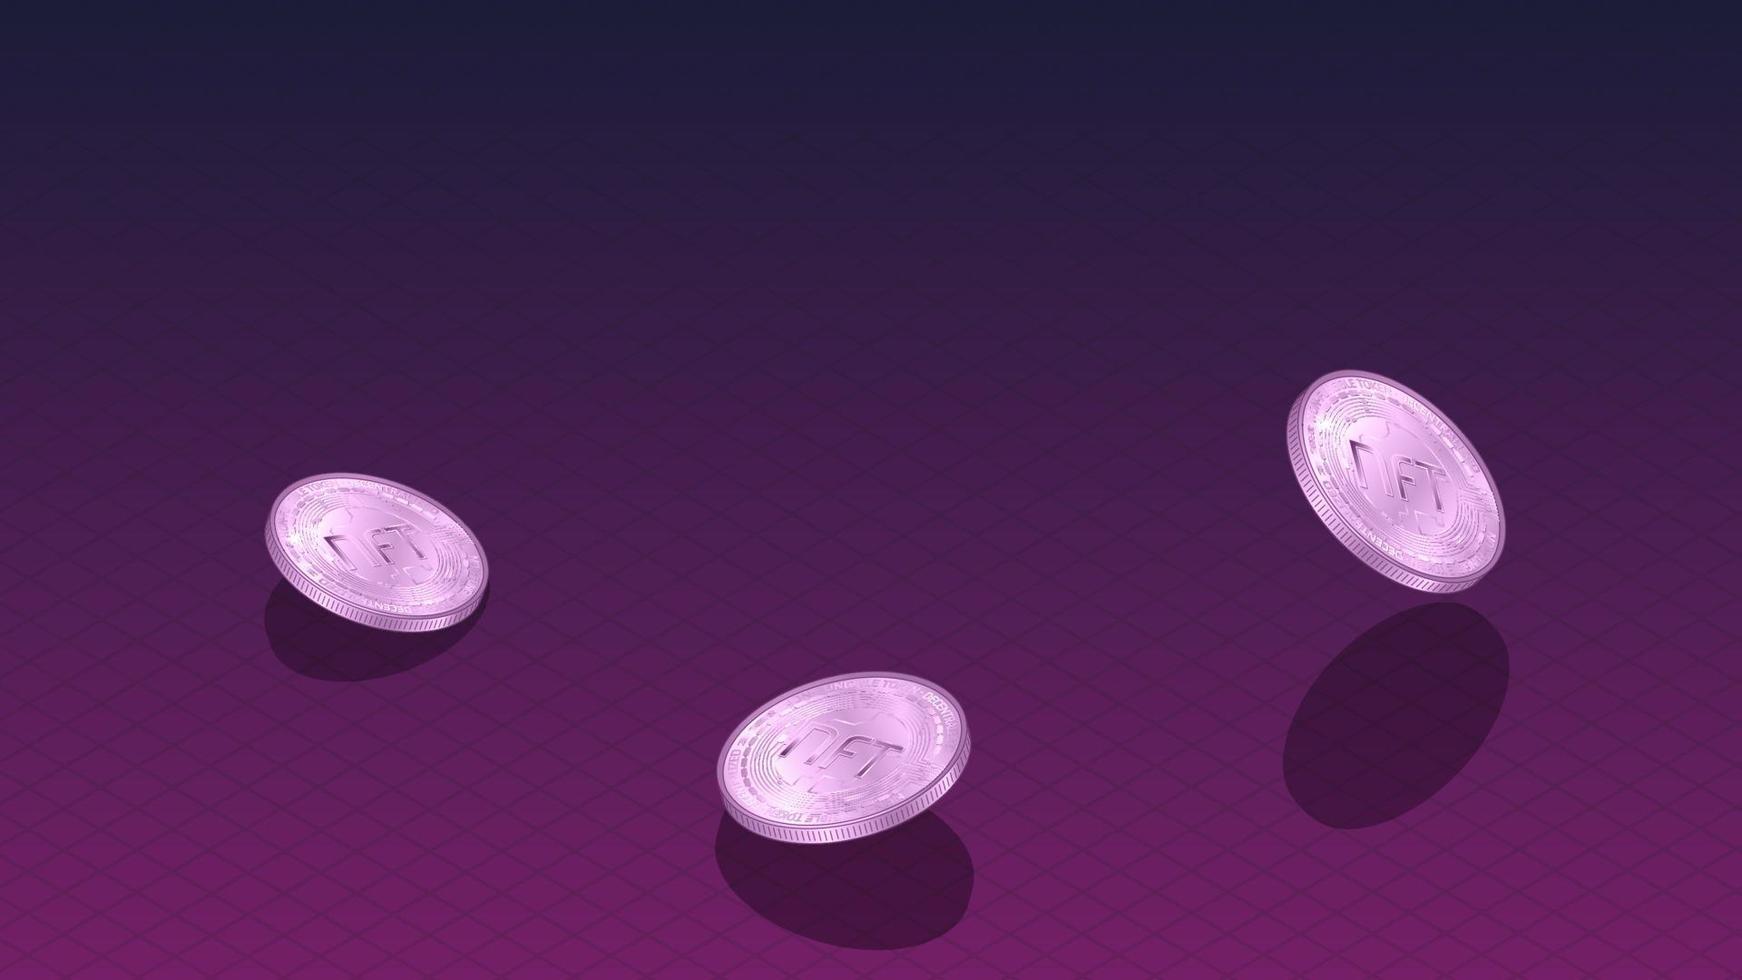 Banner de tokens no fungibles nft con monedas isométricas que caen y espacio de copia en rojo oscuro. paga por coleccionables únicos en juegos o arte. ilustración vectorial vector